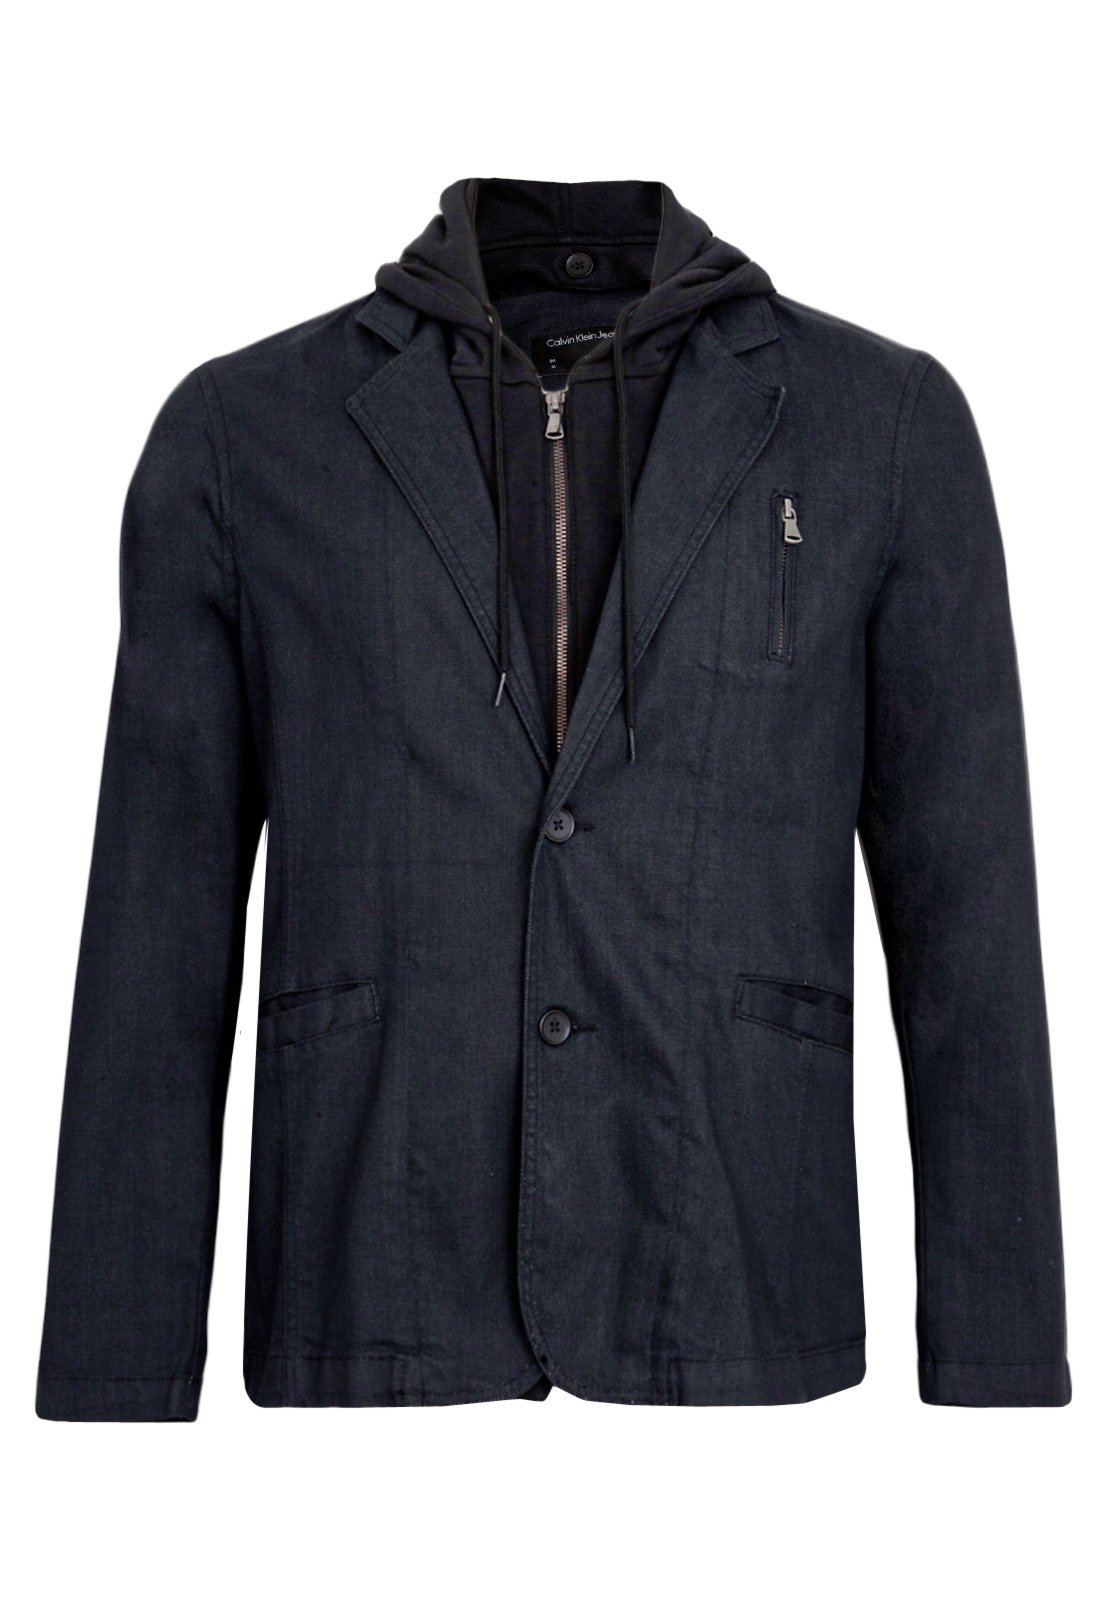 jaqueta masculina com ziper